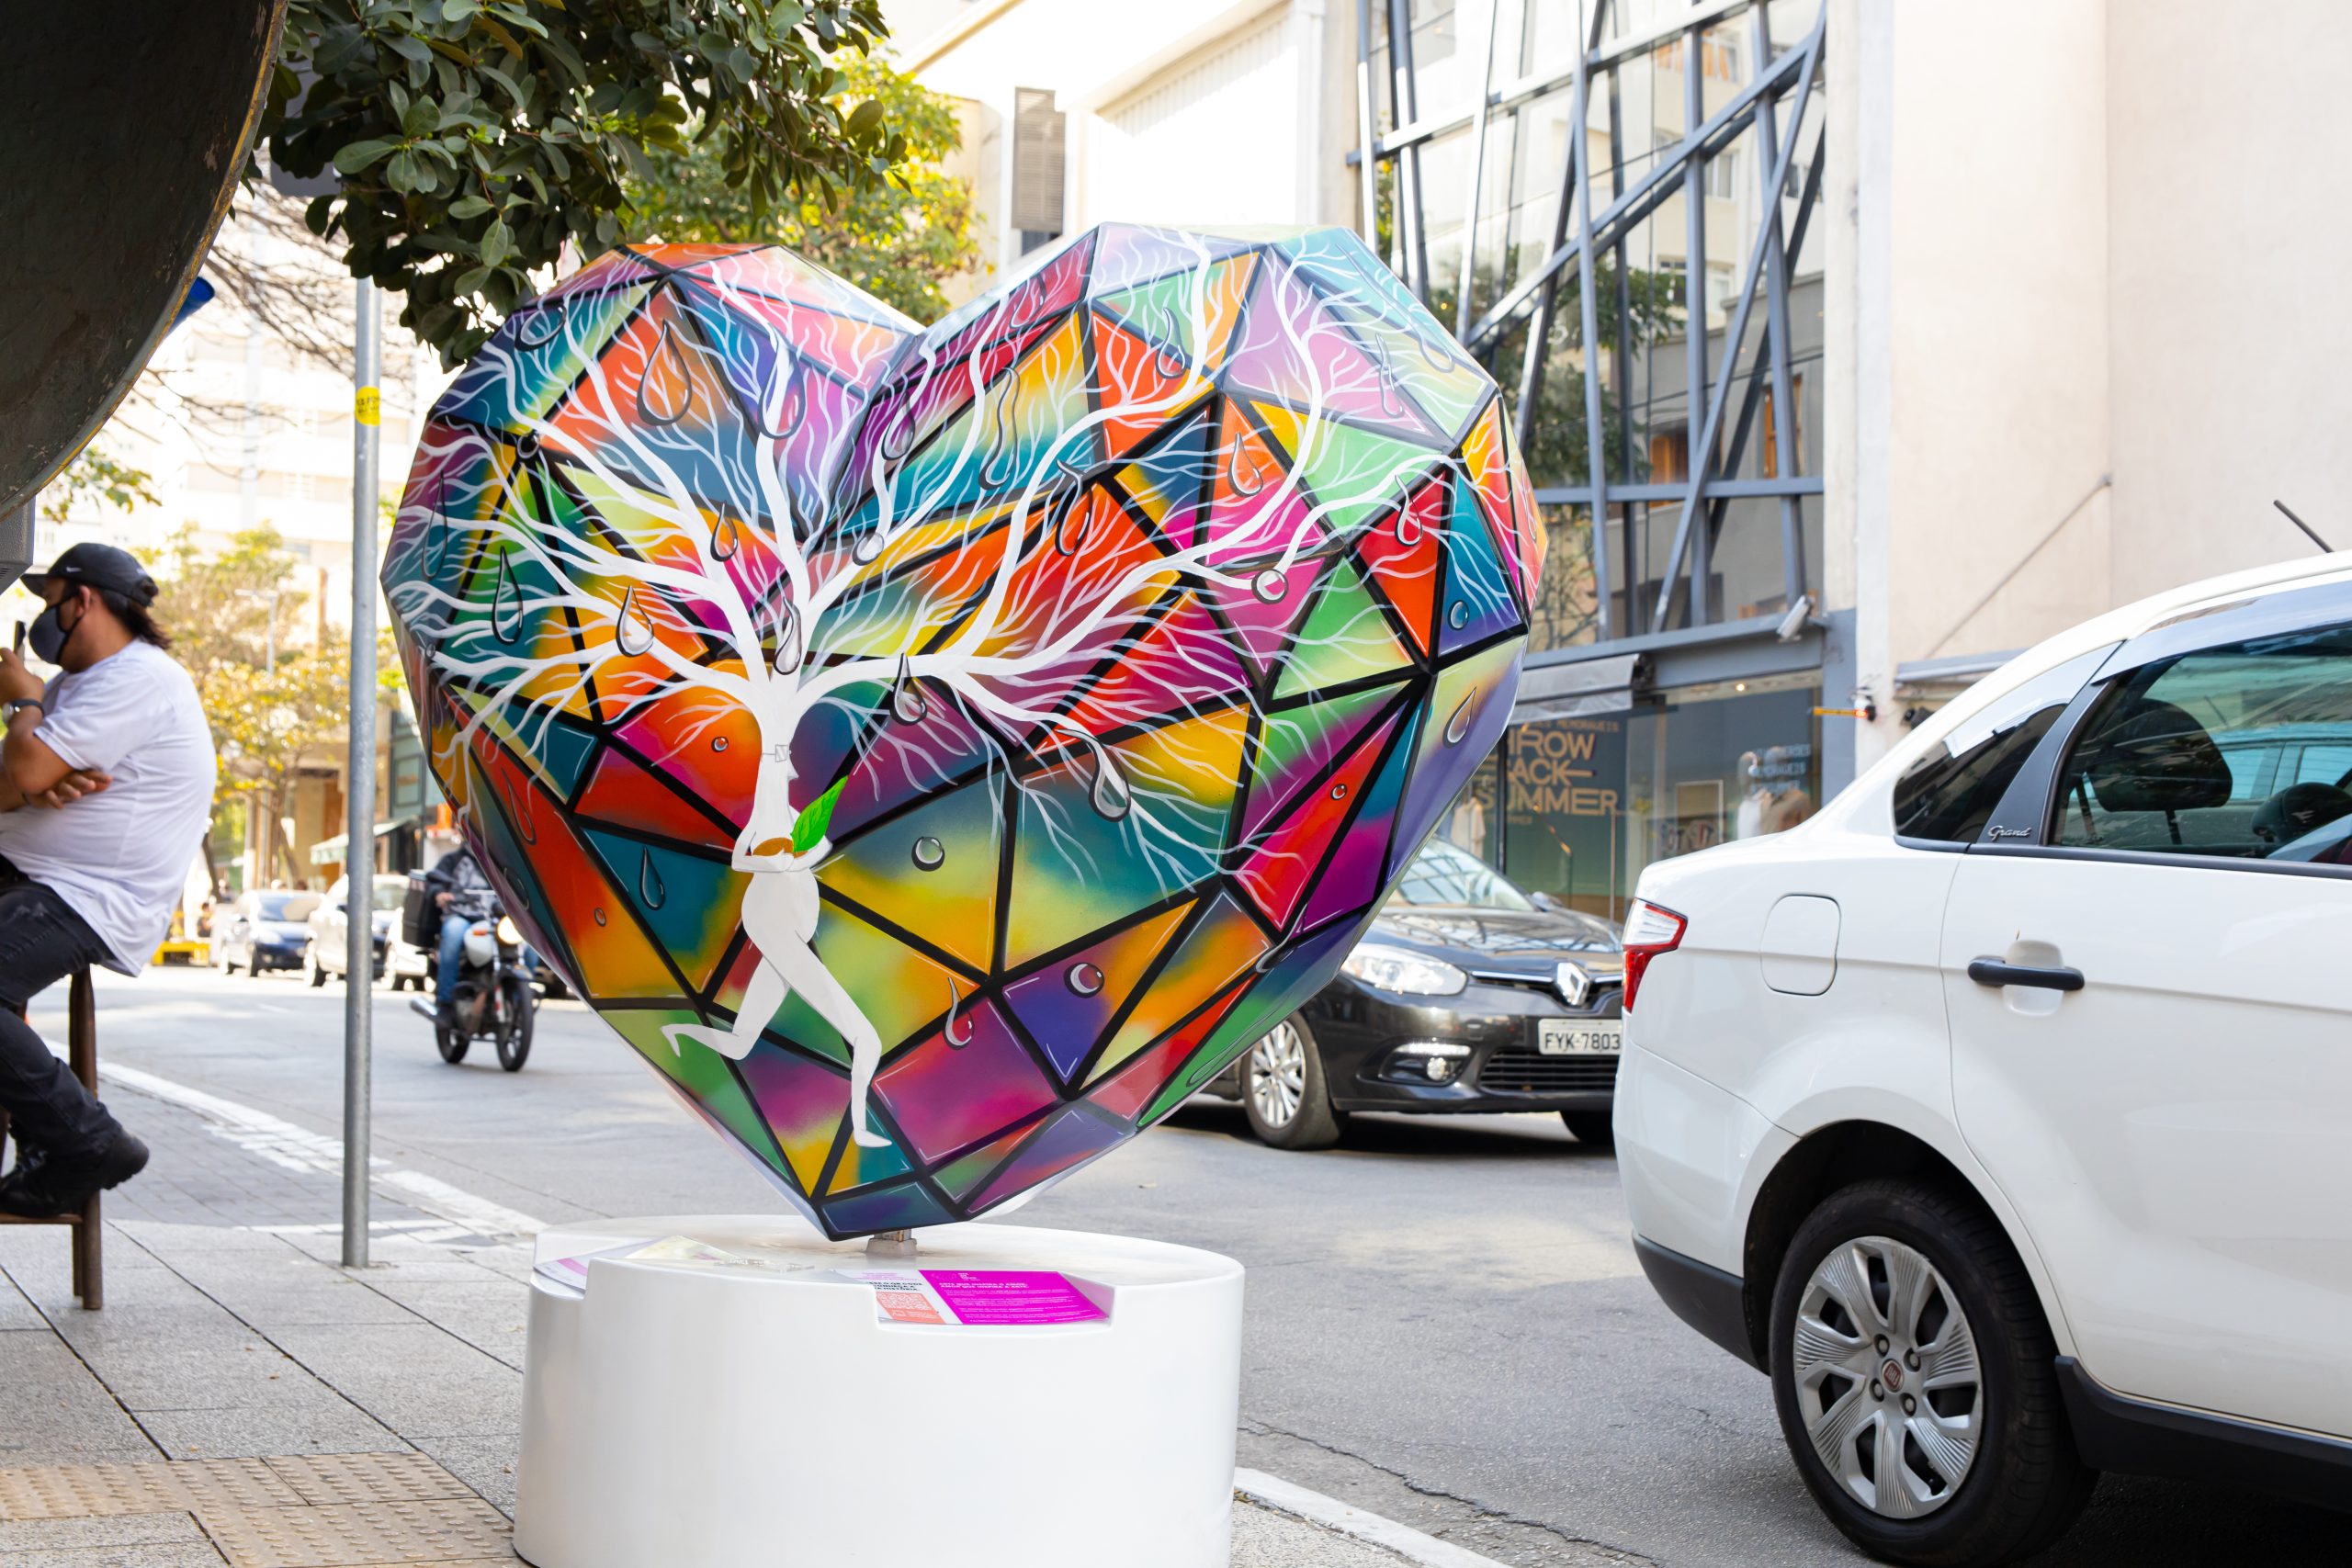 Exposições de arte urbana movimentam cerca de 3 milhões de reais